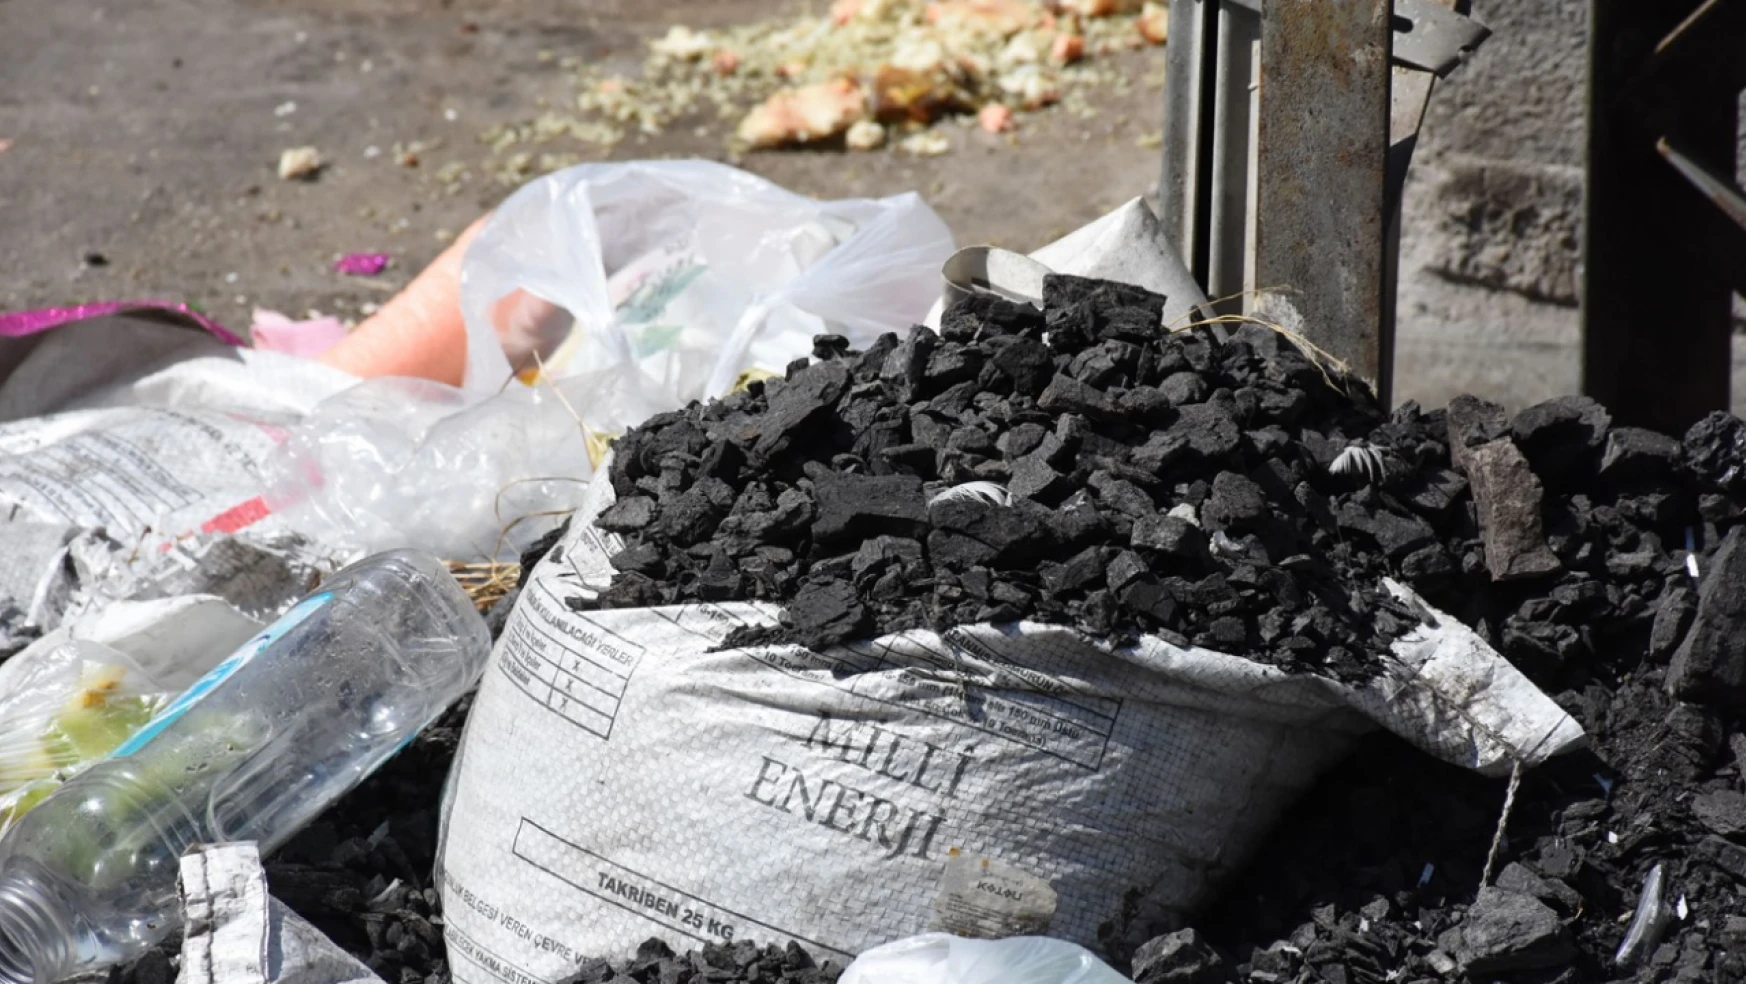 İhtiyaç sahiplerine ücretsiz verilen kömürler çöpe atıldı